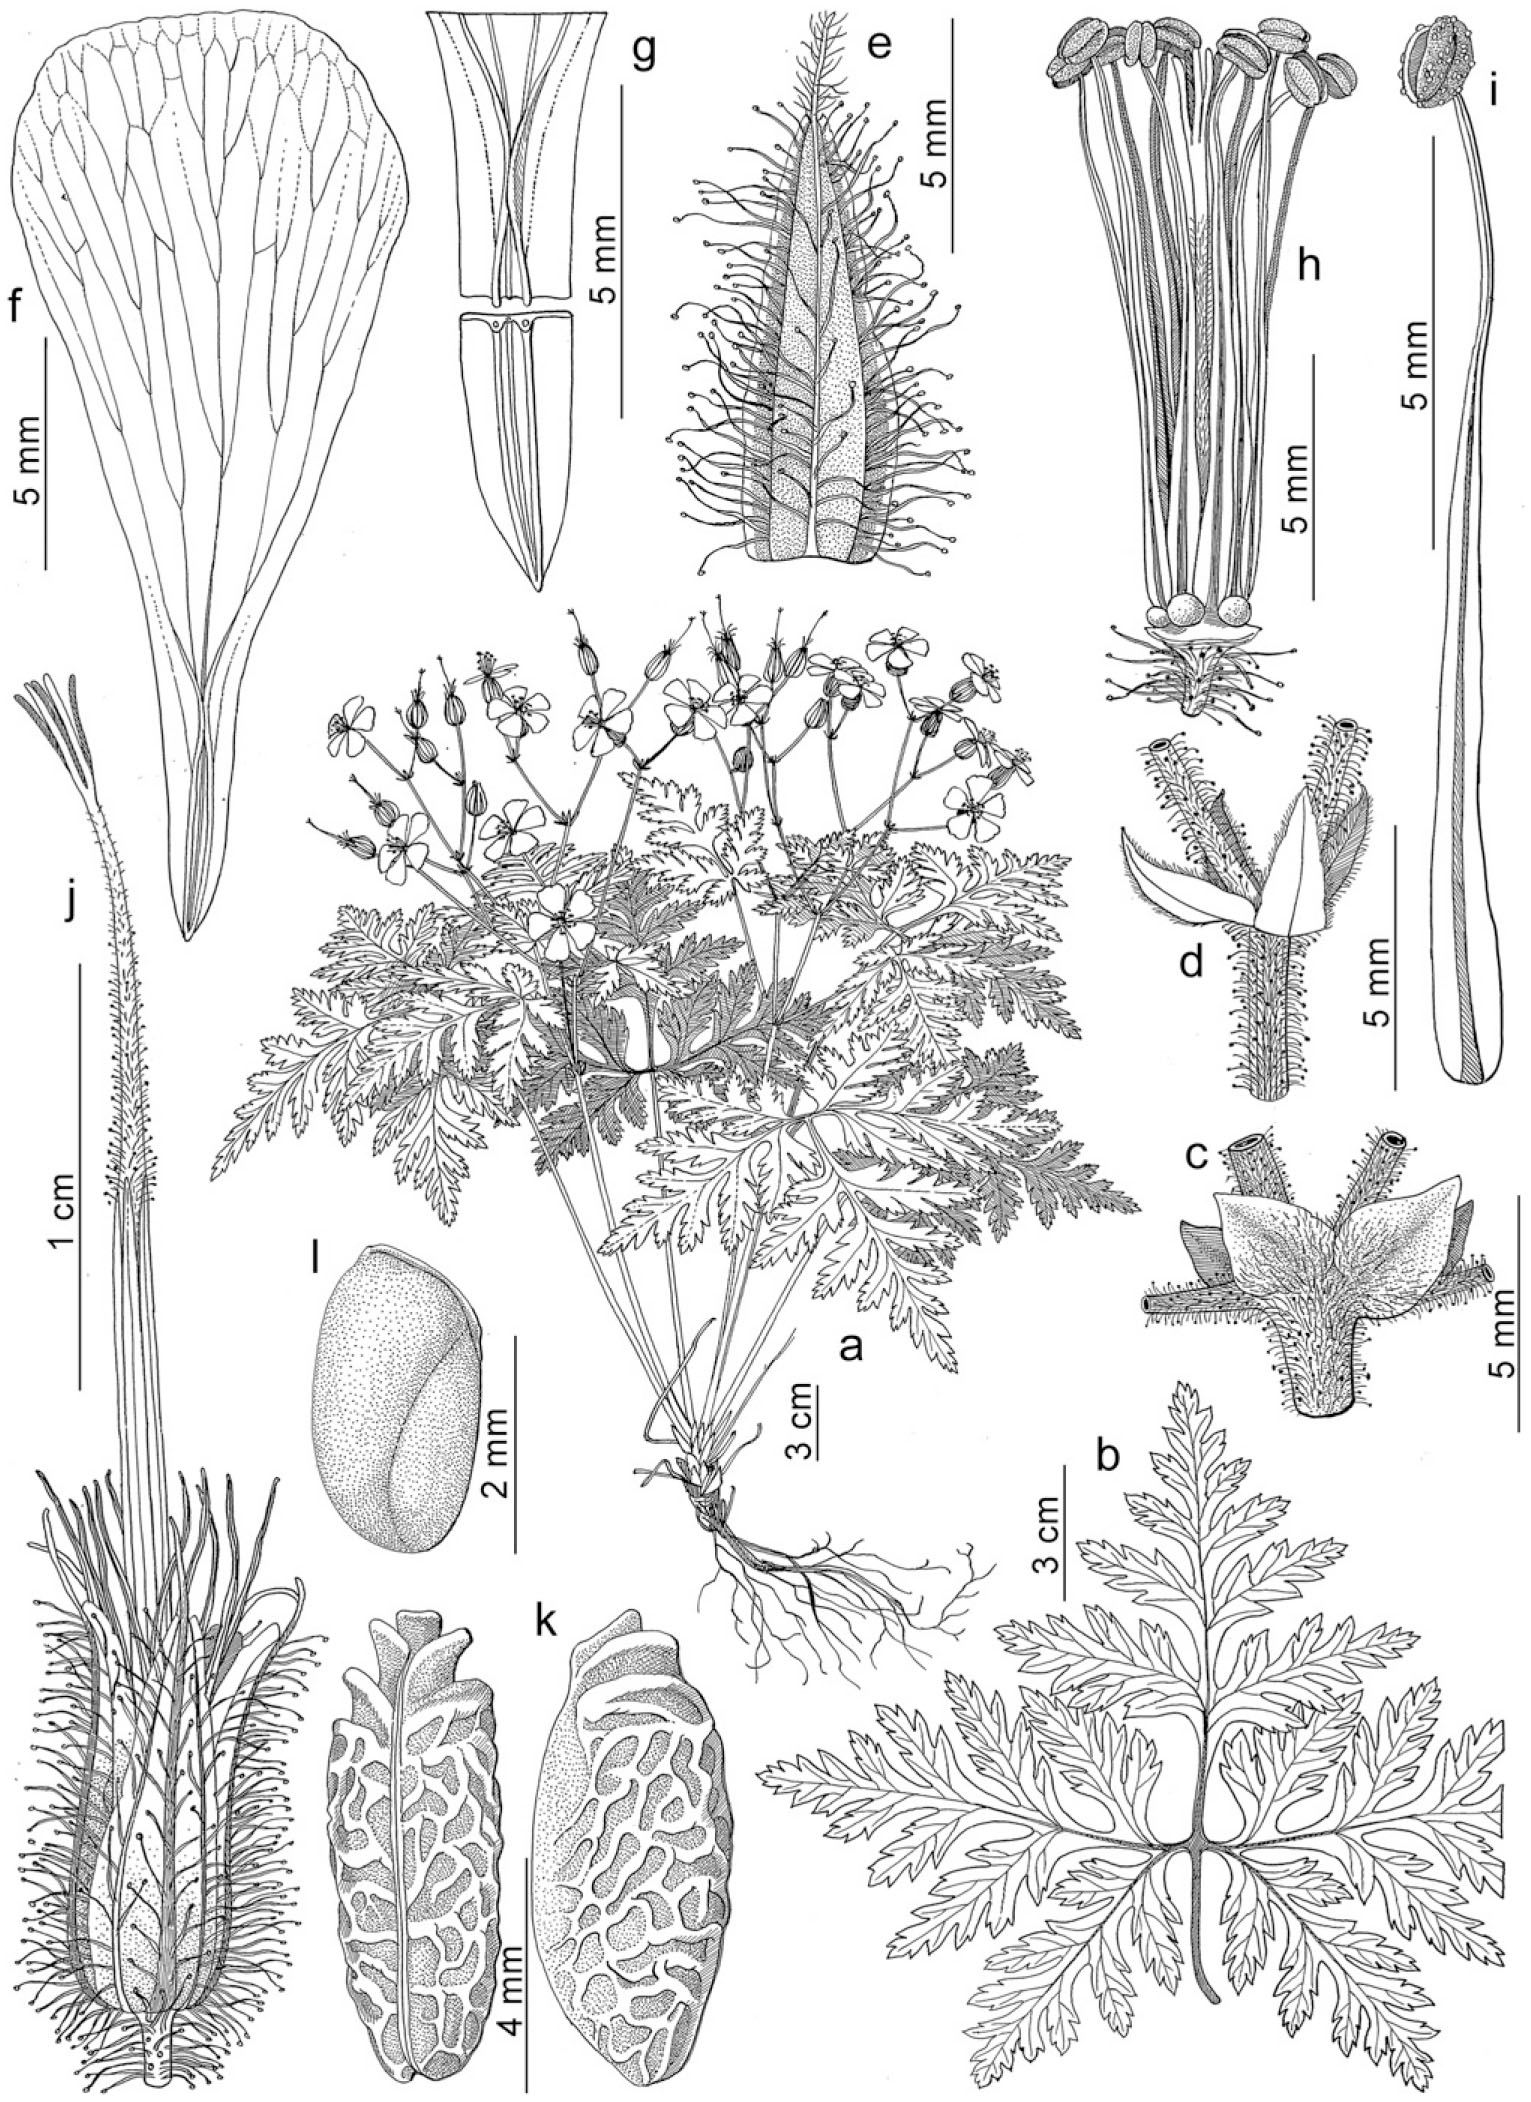 Taxonomic Revision Of Geranium Sect Ruberta And Unguiculata